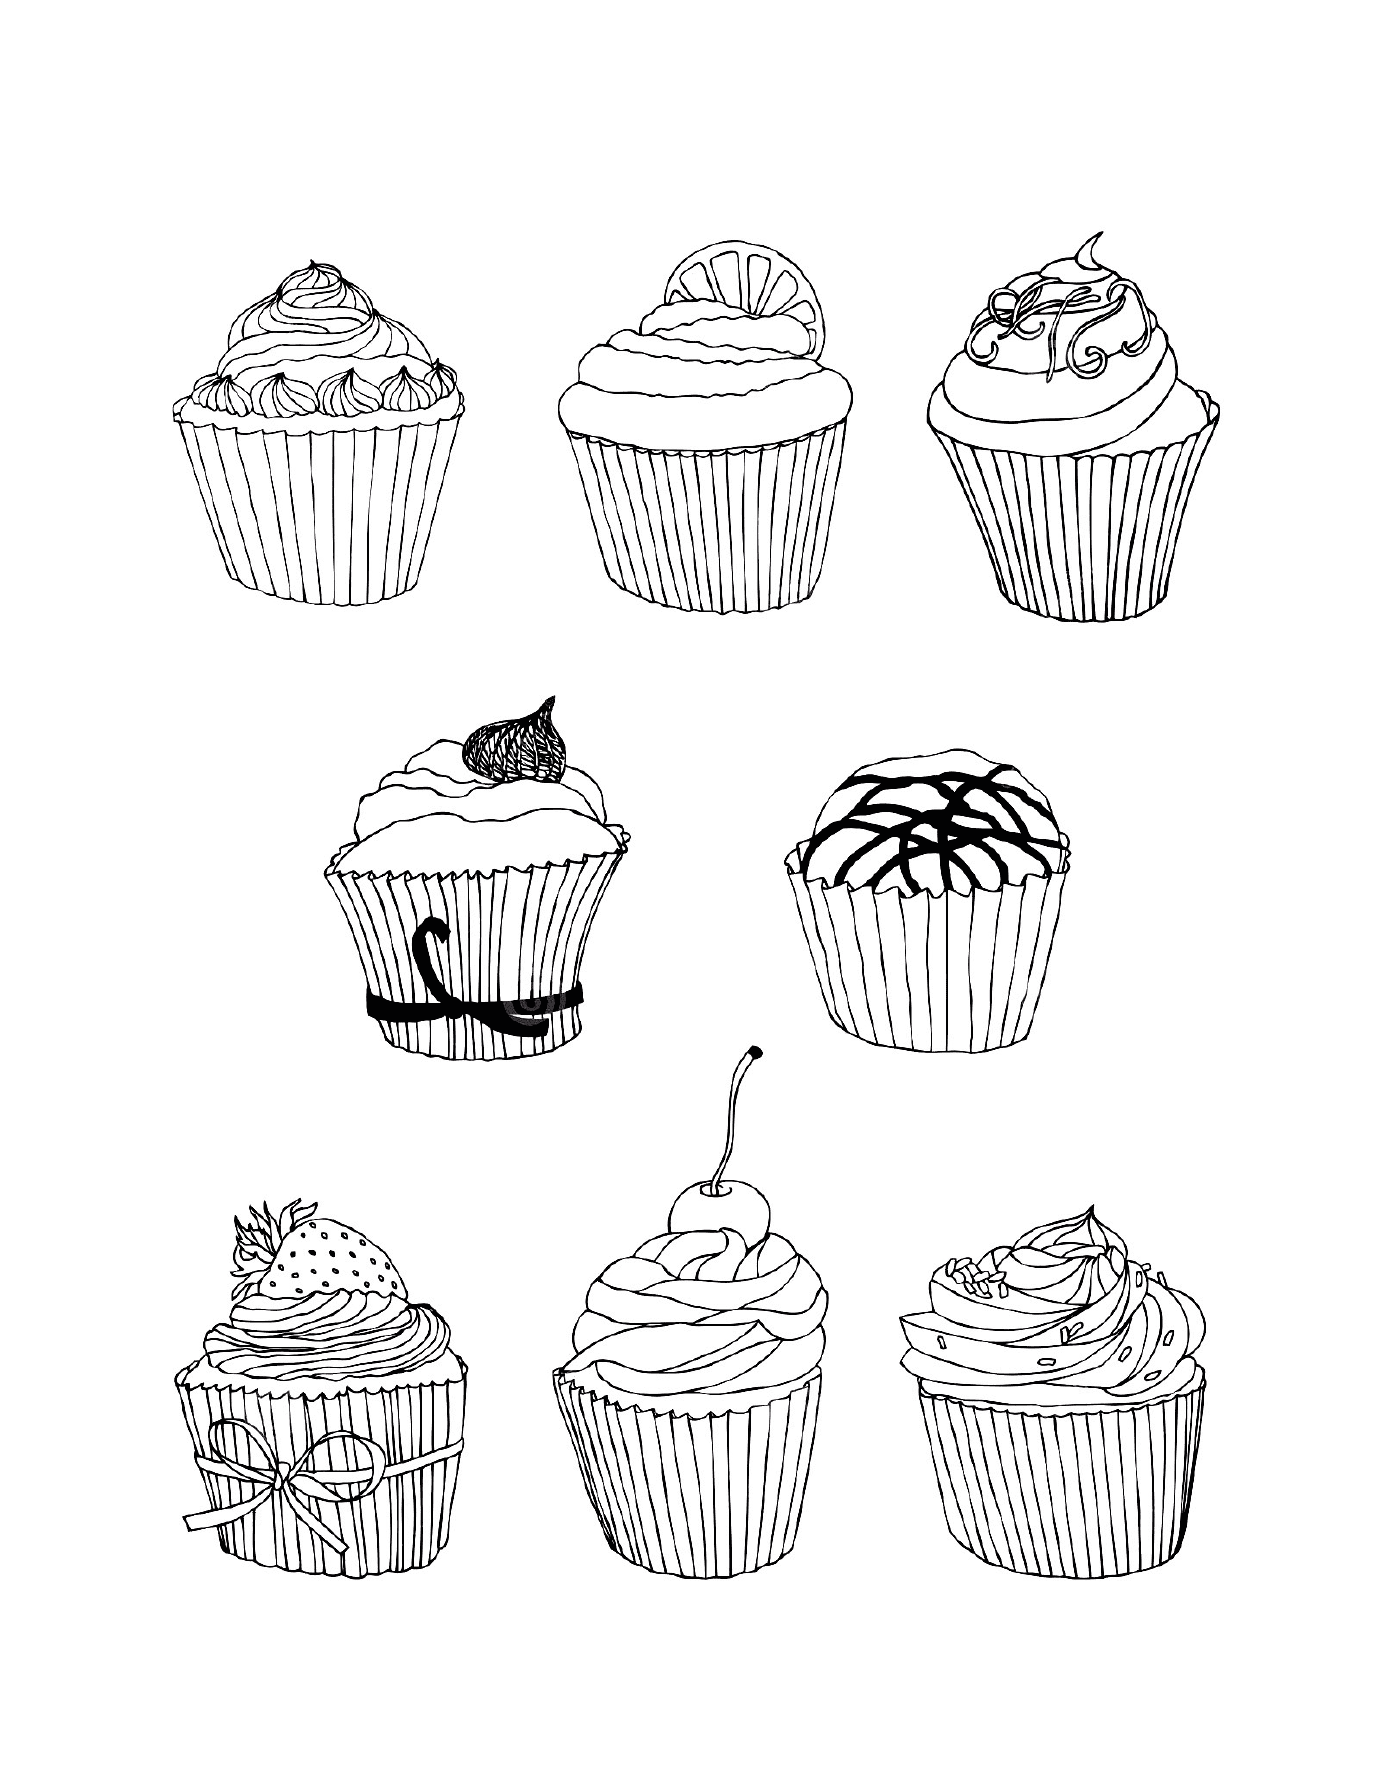  cupcakes sorteados 